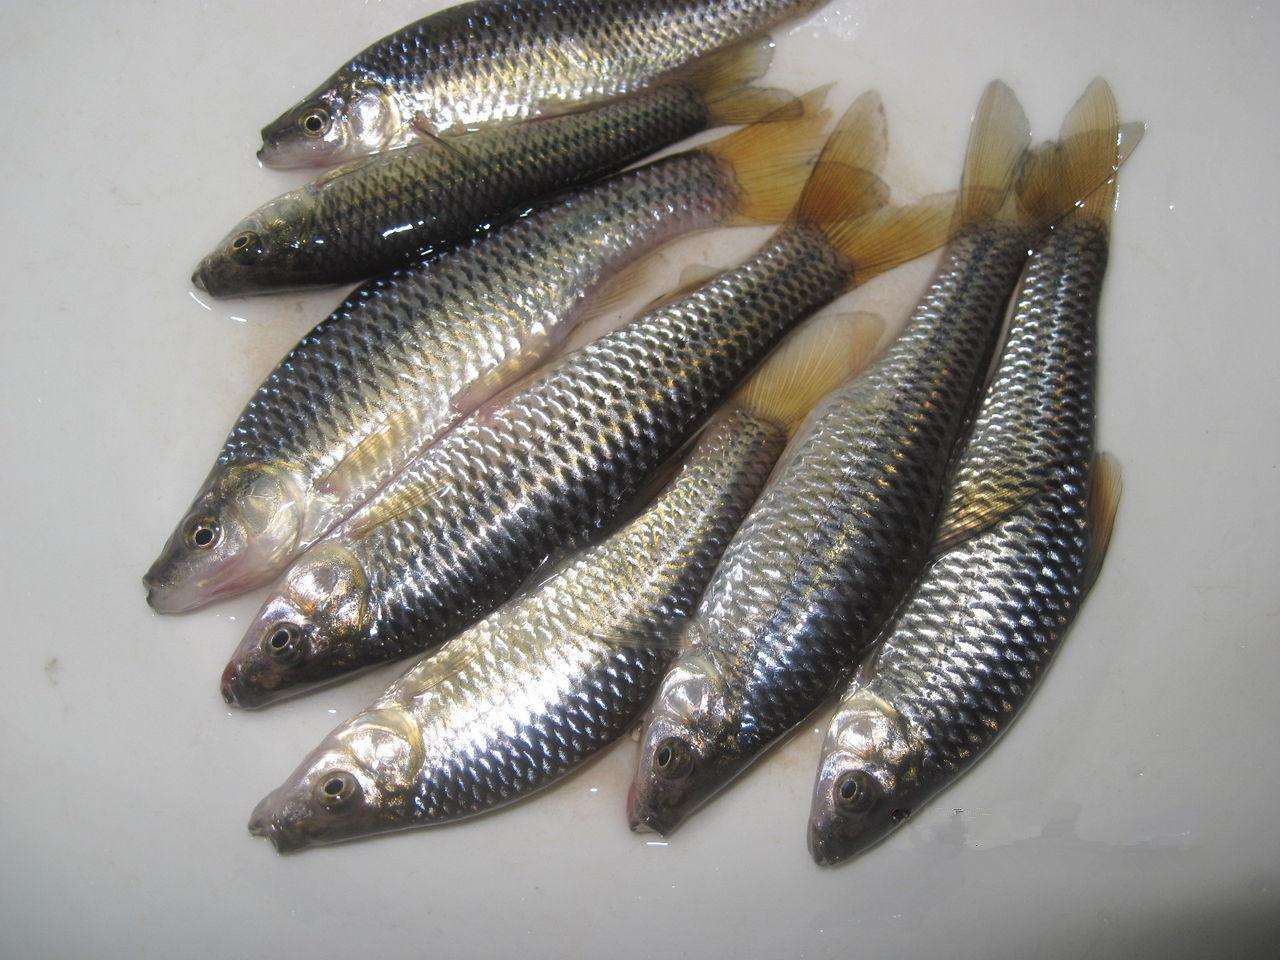 人工养殖小杂鱼图片